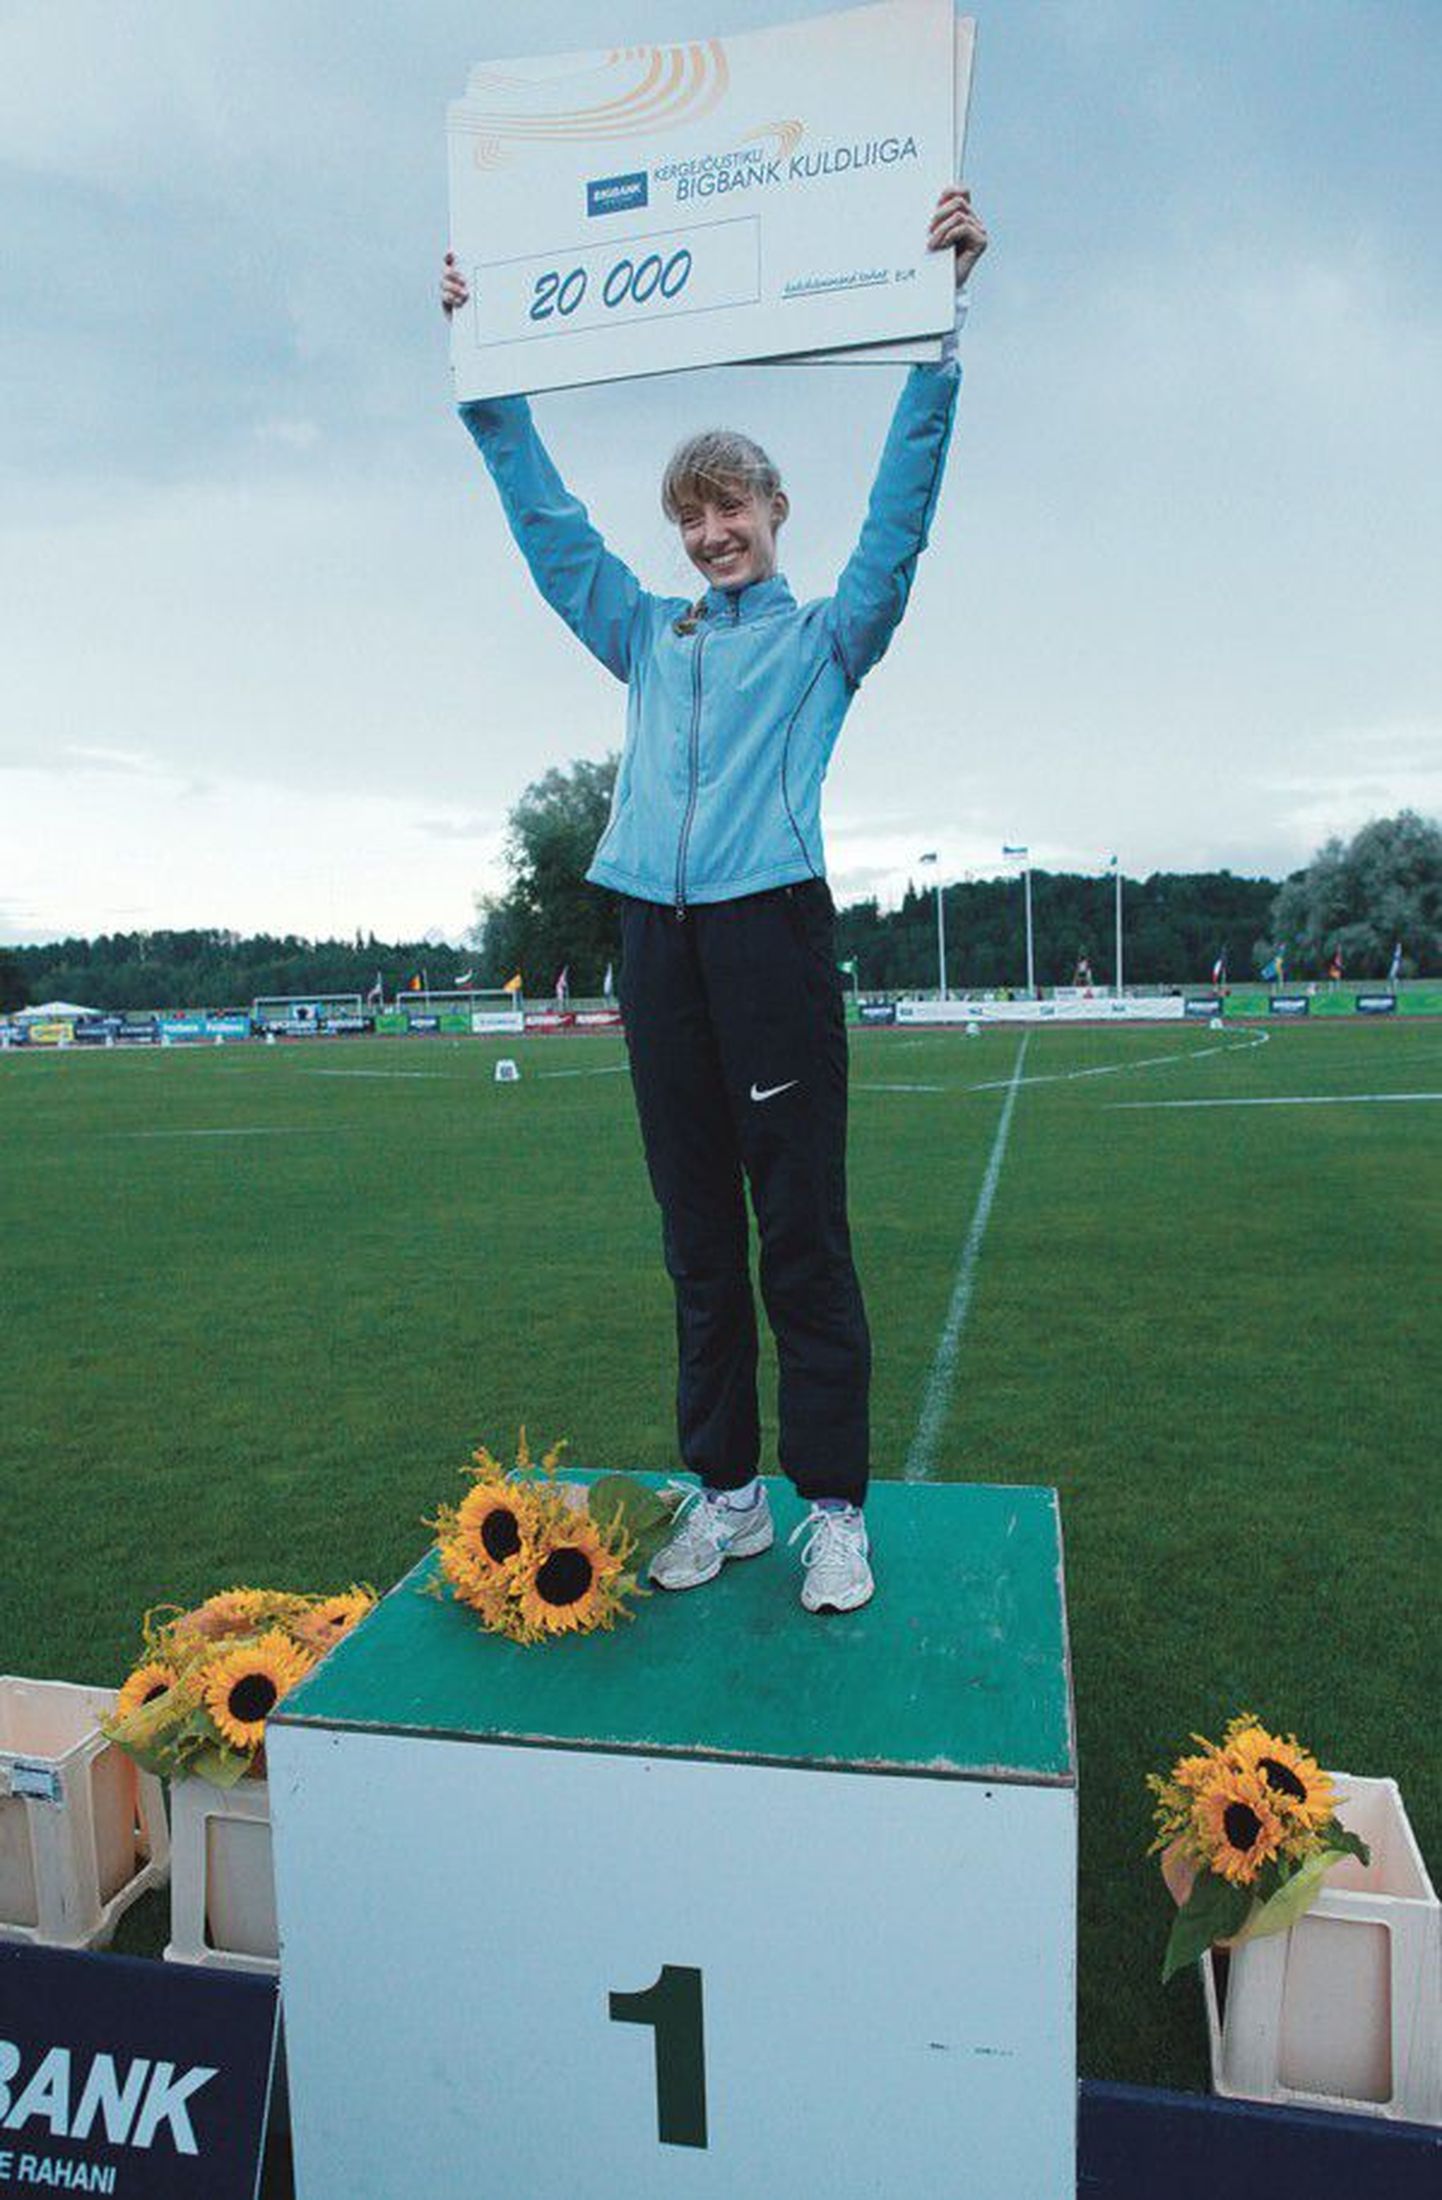 Kõrgushüppaja Anna Iljuštšenko võitis teist aastat järjest Kuldliiga jackpot’i.